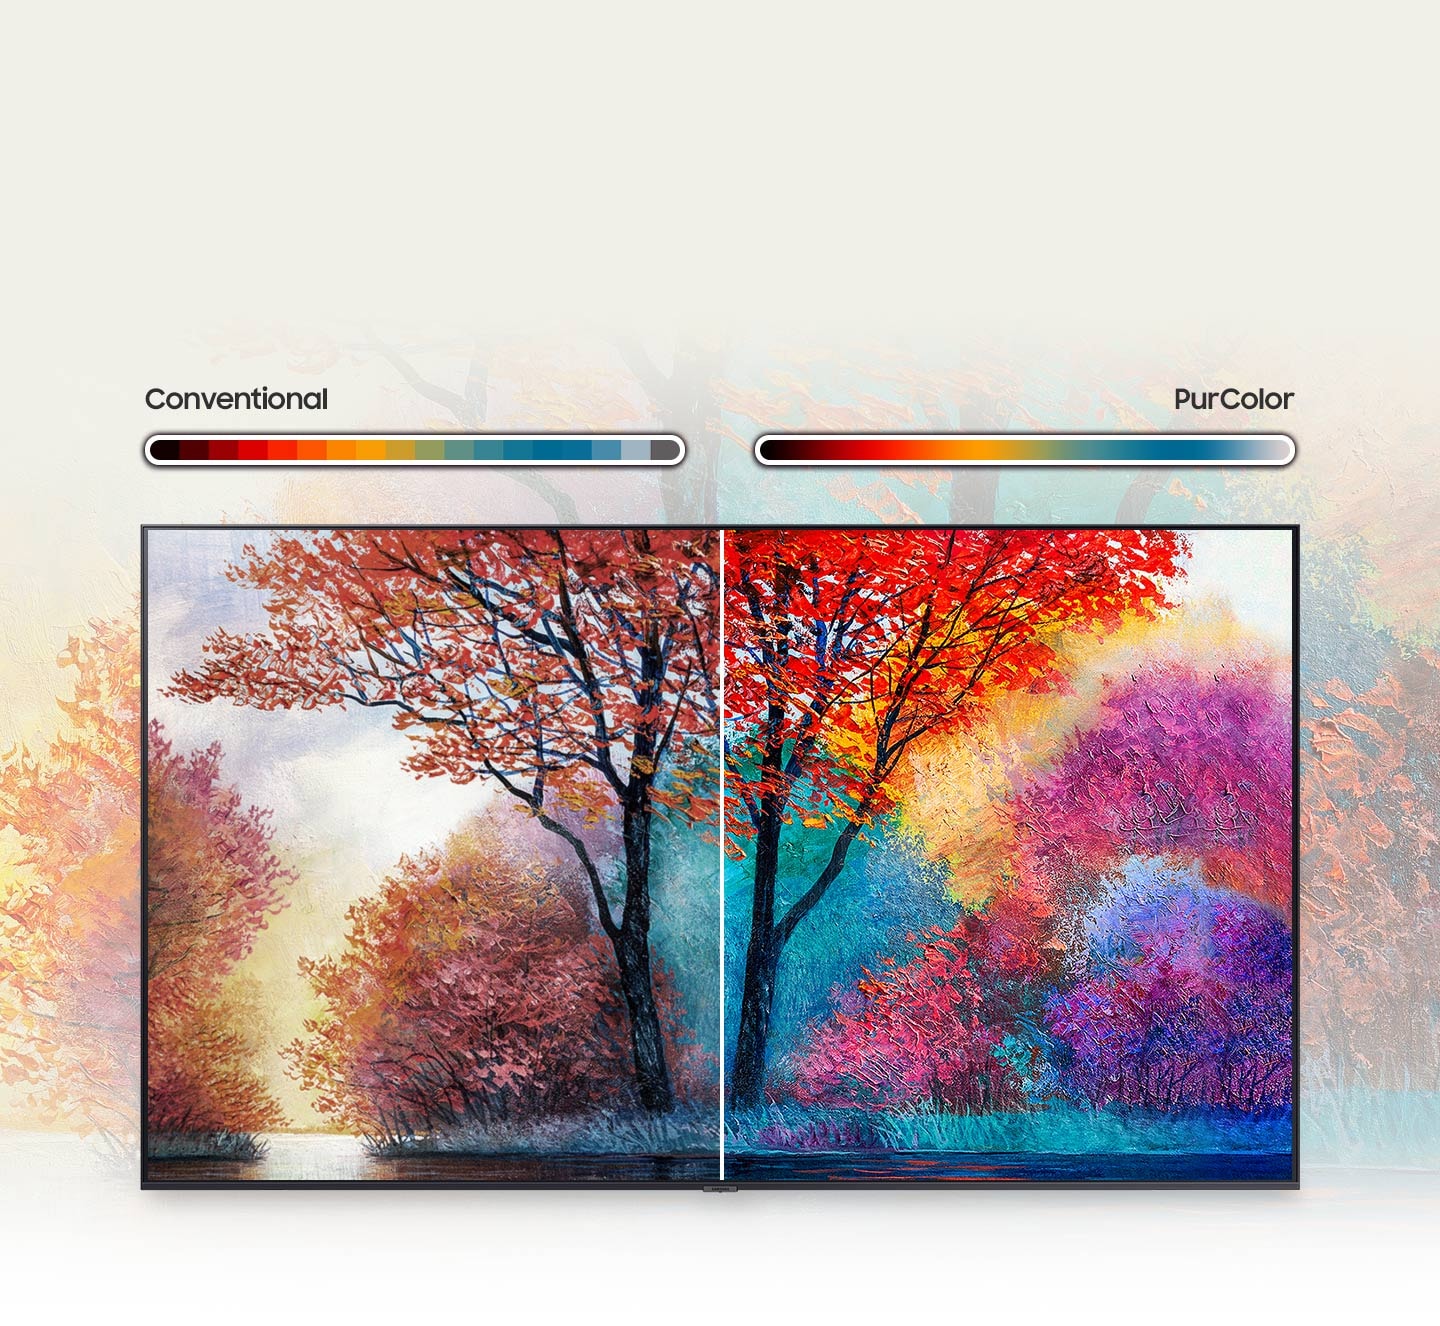 La pintura de la derecha muestra una gama más amplia y viva de color gracias a la tecnología PurColor de los televisores Samsung Crystal UHD 